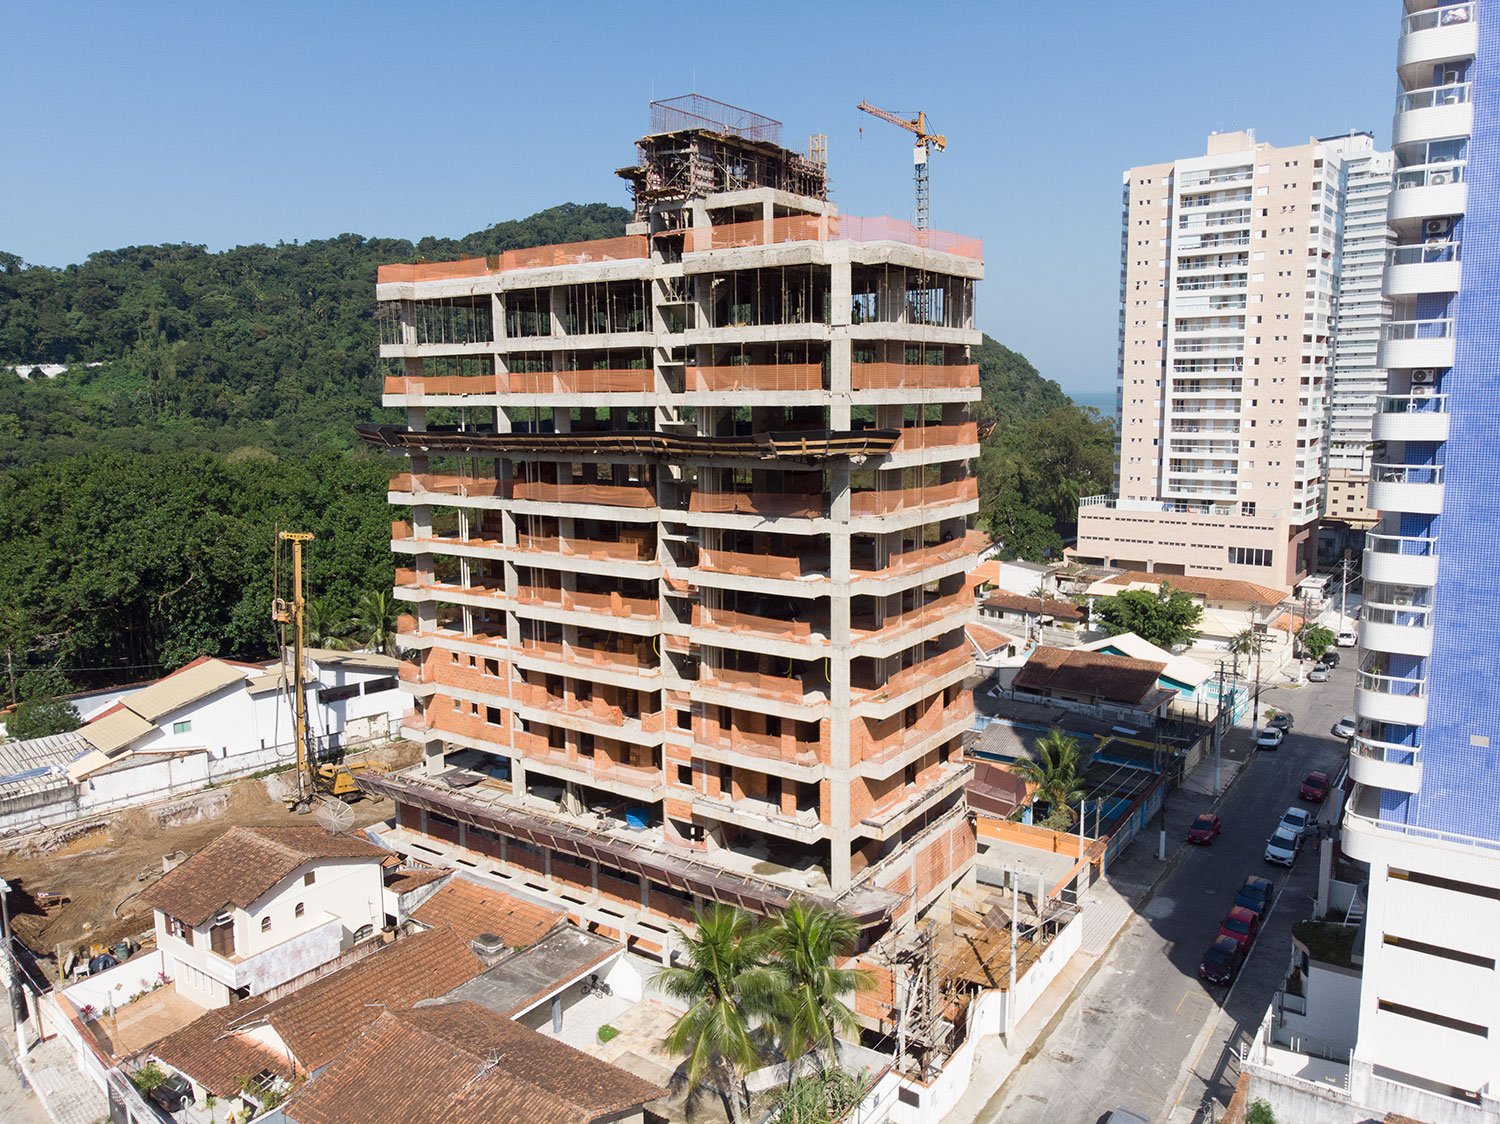 Obra - Autentic 154 Residence - Canto do Forte - Construtora JR e Garcia - Praia Grande SP